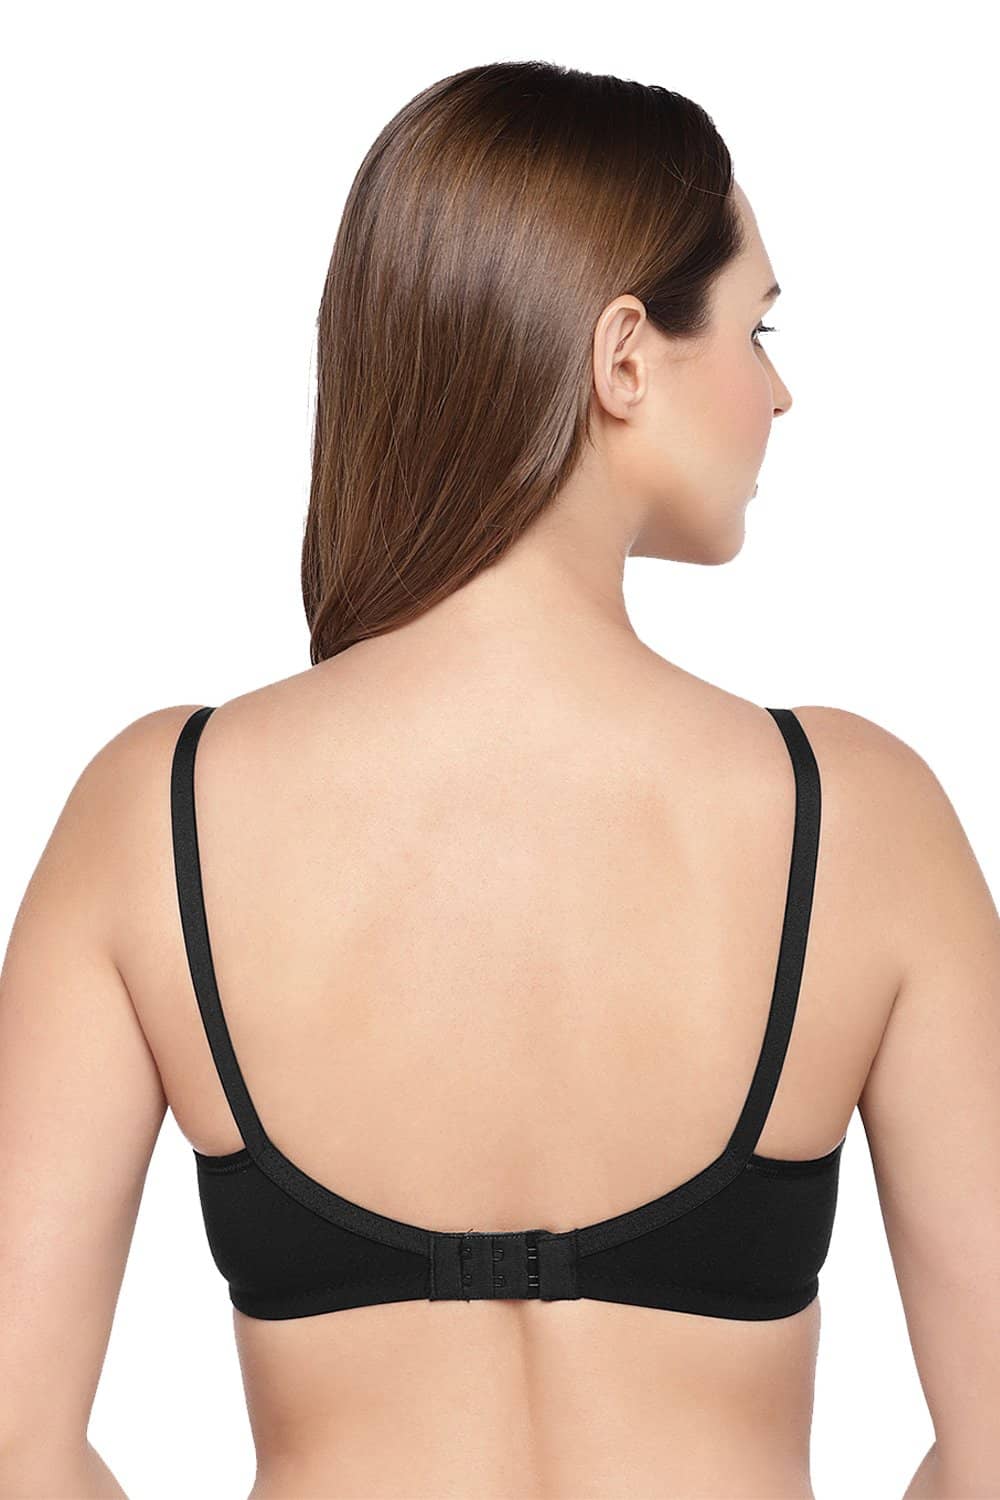 Buy online Black Cotton Regular Bra from lingerie for Women by